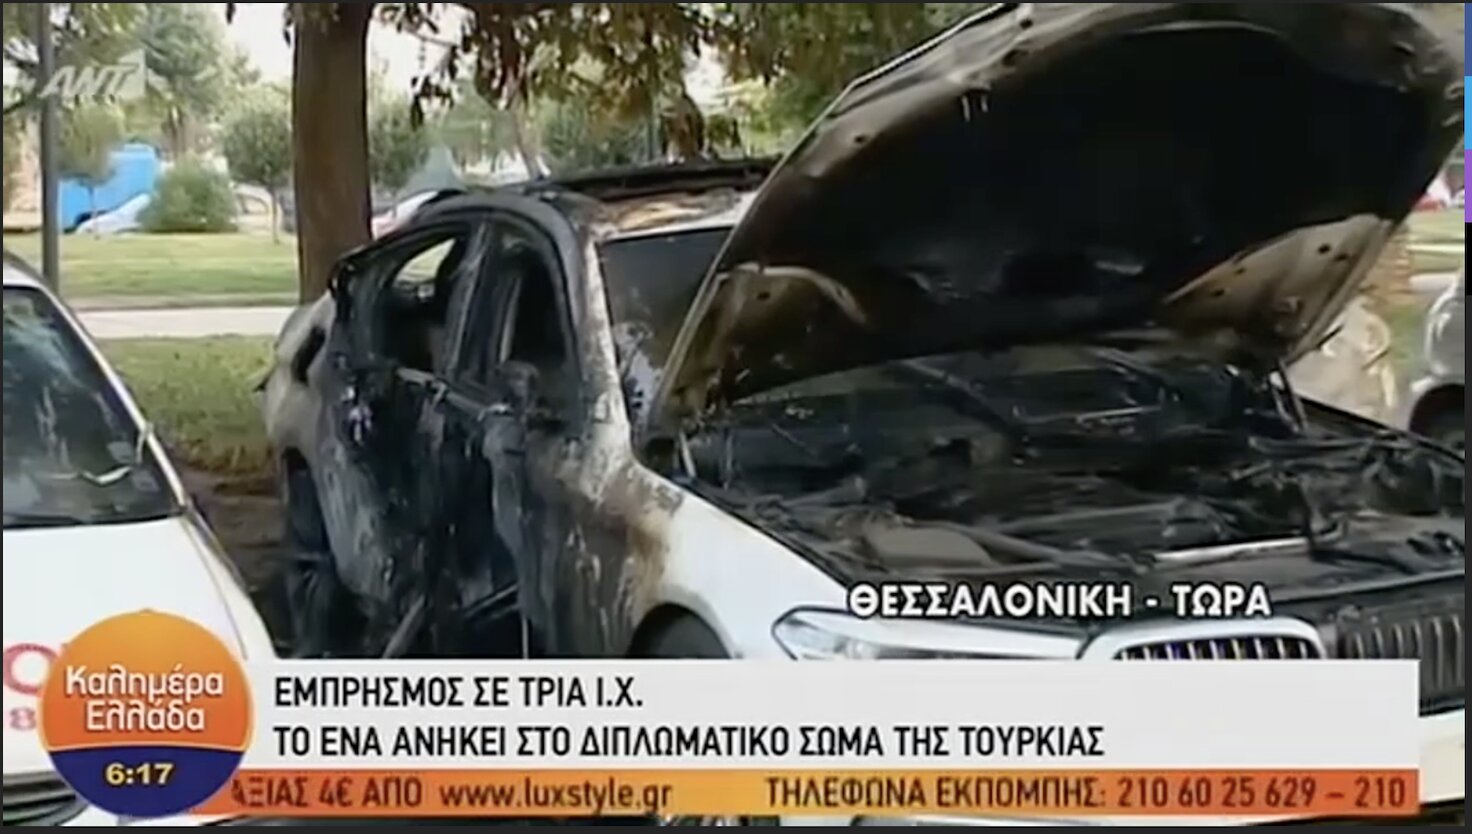 Θεσσαλονίκη: Έκαψαν αυτοκίνητα Τούρκων διπλωματών – Δείτε τα βίντεο